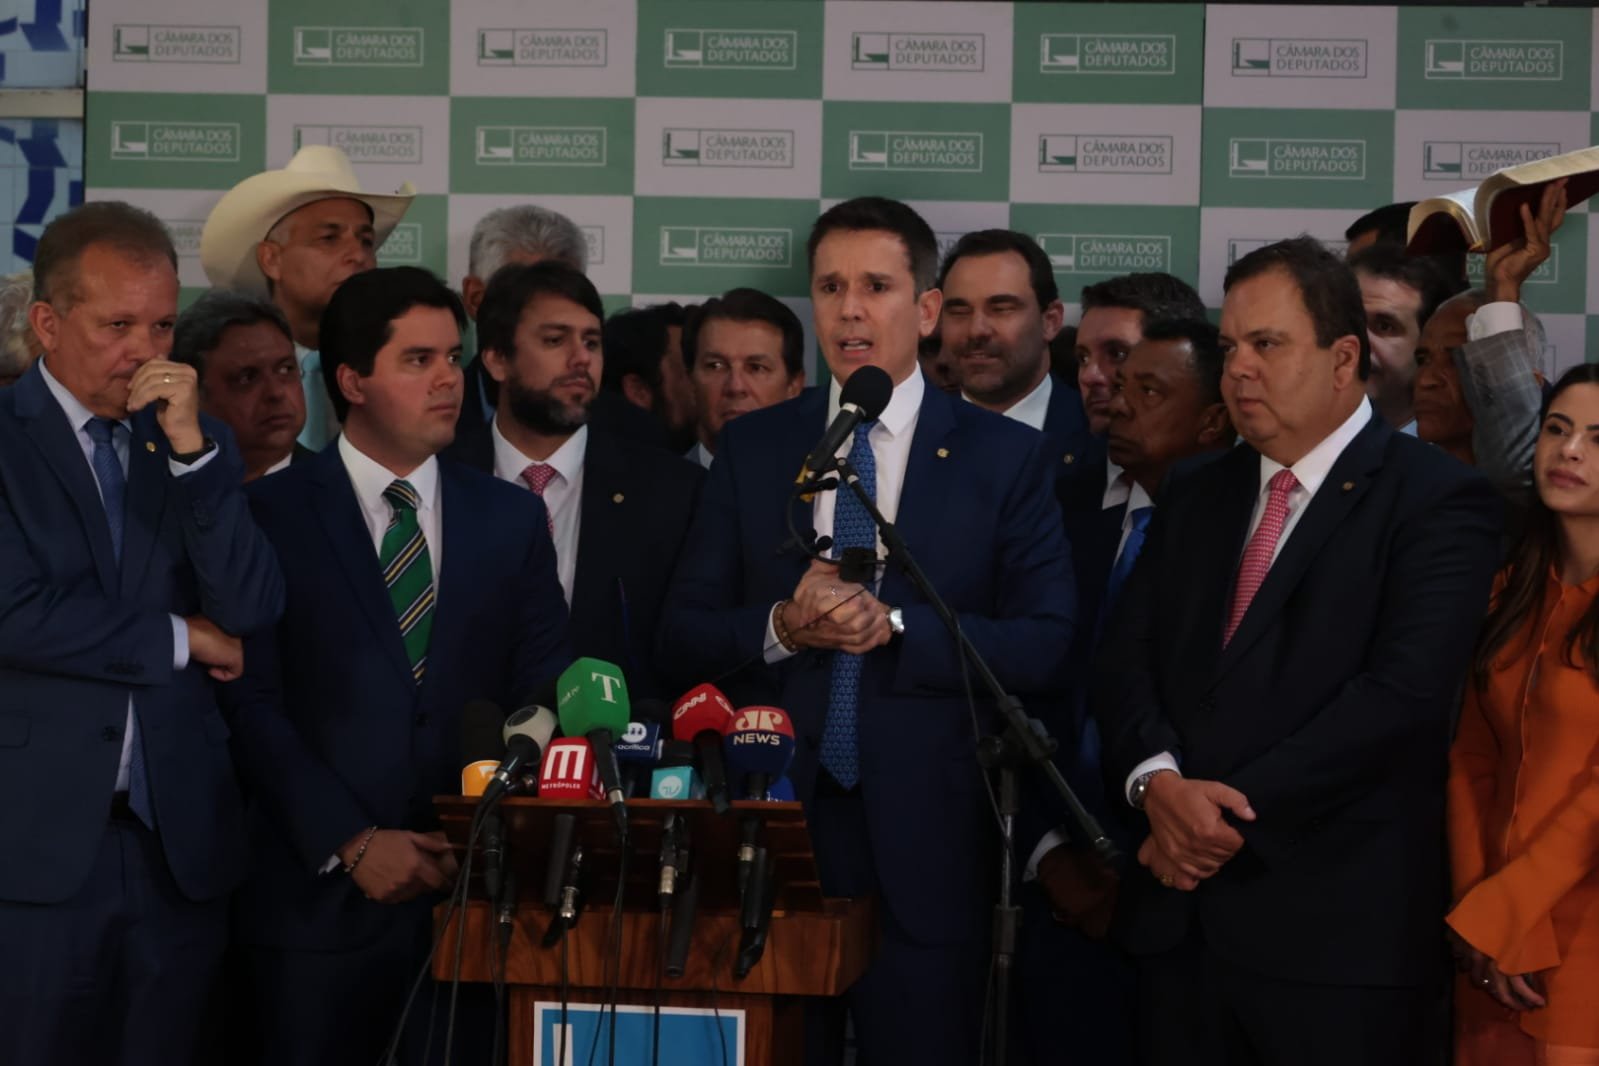 O deputado Felipe Carreras, líder do blocão de Arthur Lira, discursa na Câmara ao lado de outros líderes partidários